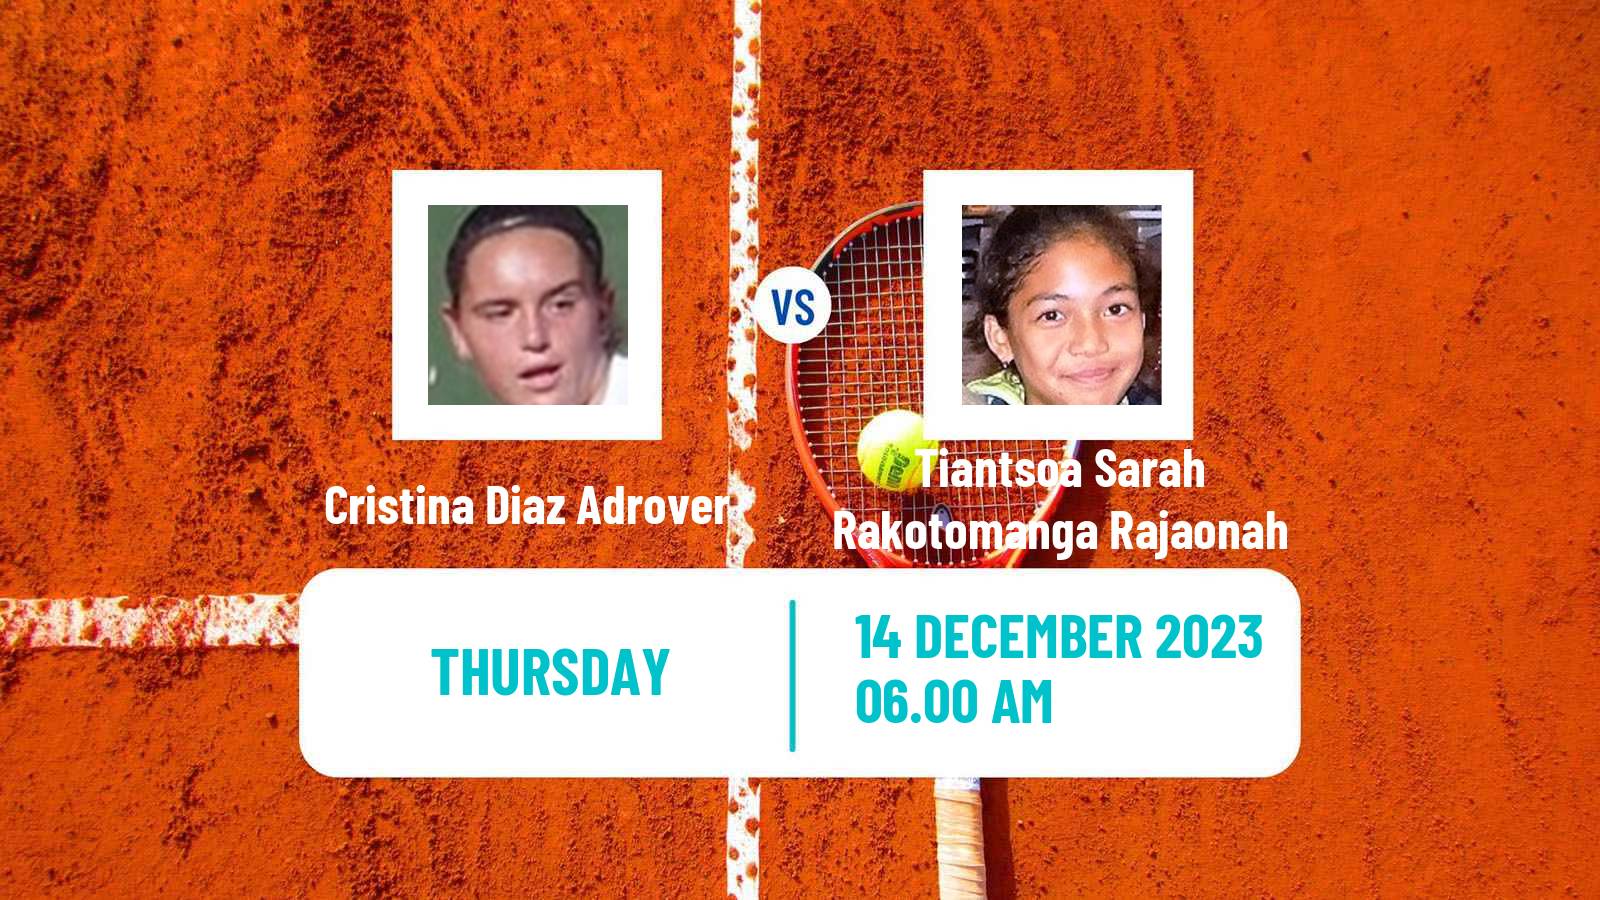 Tennis ITF W15 Melilla Women Cristina Diaz Adrover - Tiantsoa Sarah Rakotomanga Rajaonah